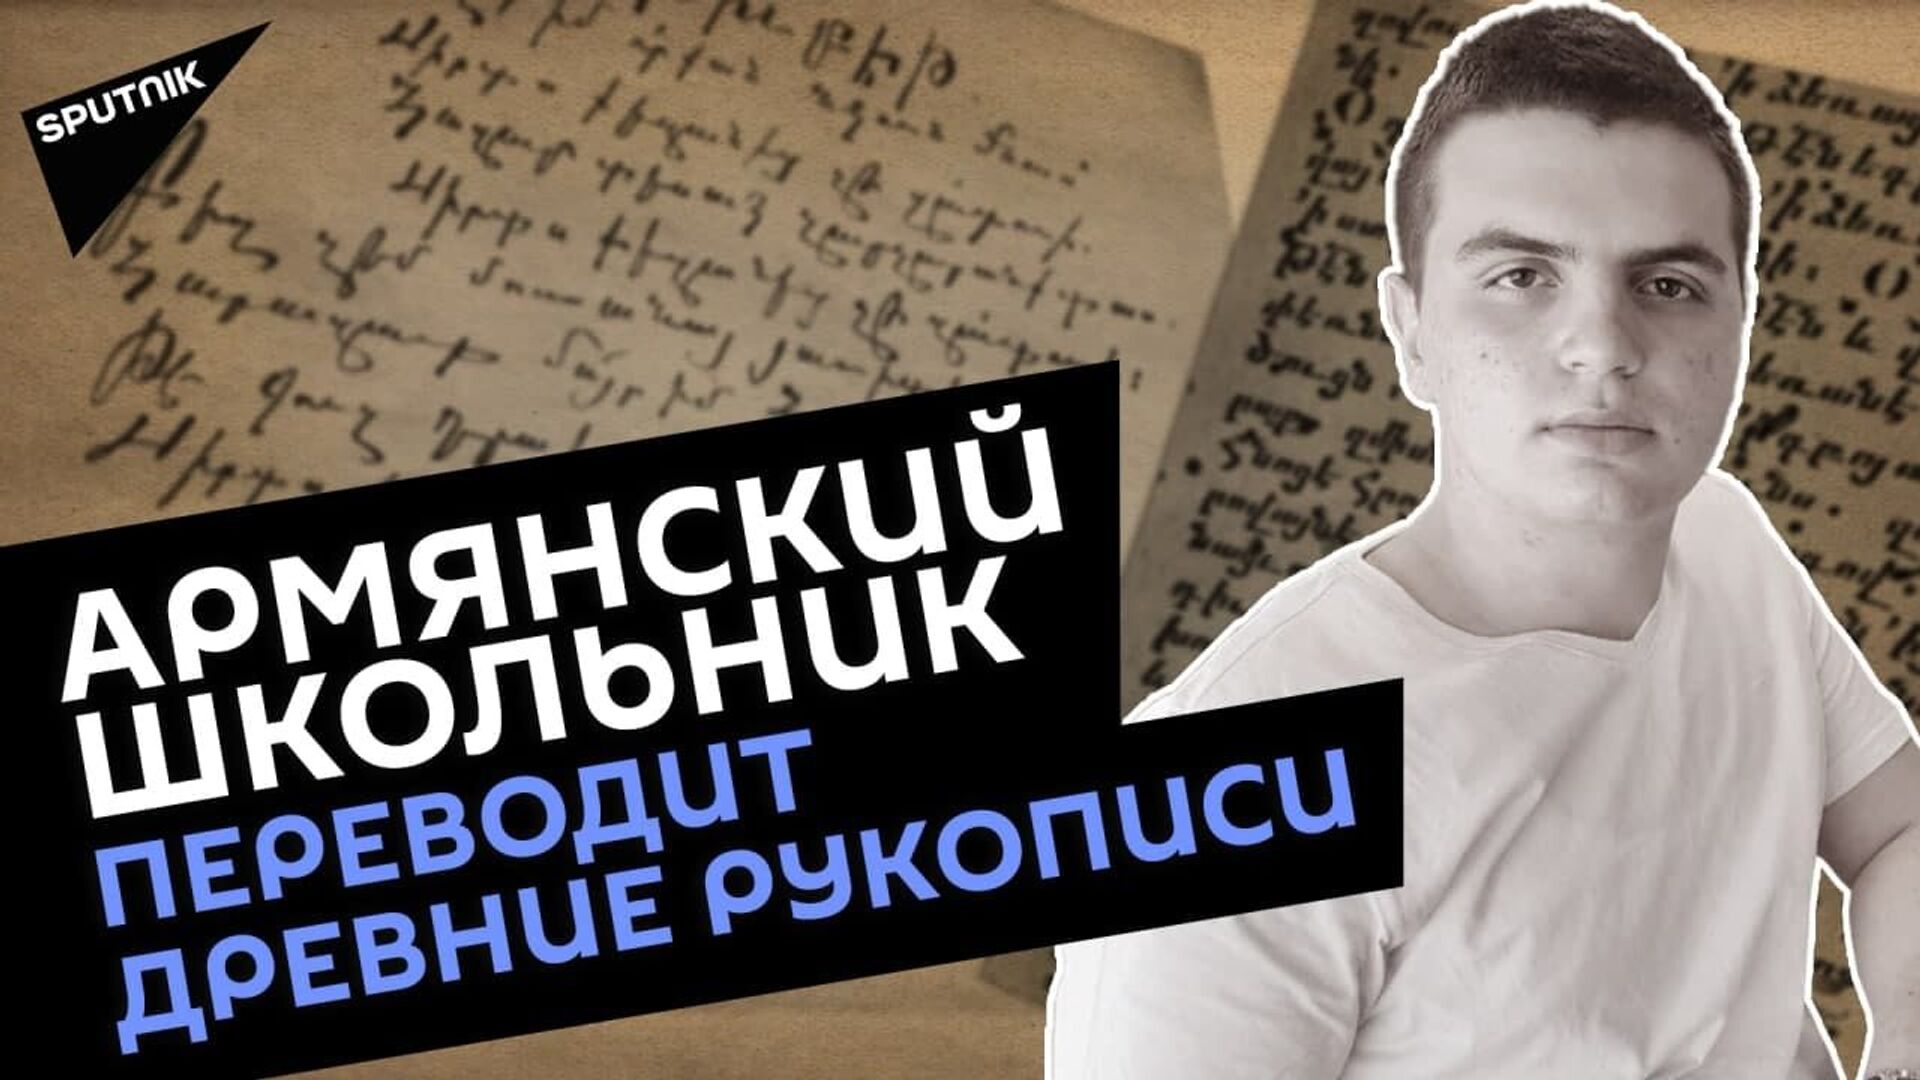 Школьник из Армении создал программу, переносящую шрифт древних манускриптов в элформат - Sputnik Армения, 1920, 10.05.2021